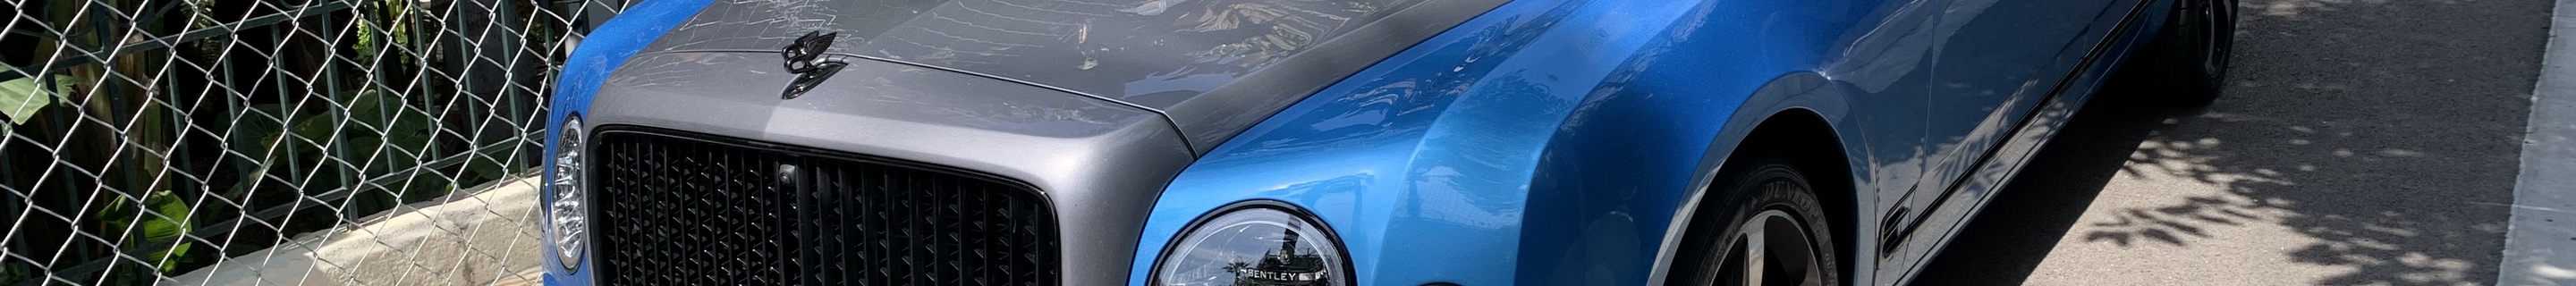 Bentley Mulsanne Speed 2016 Mulliner Design Series